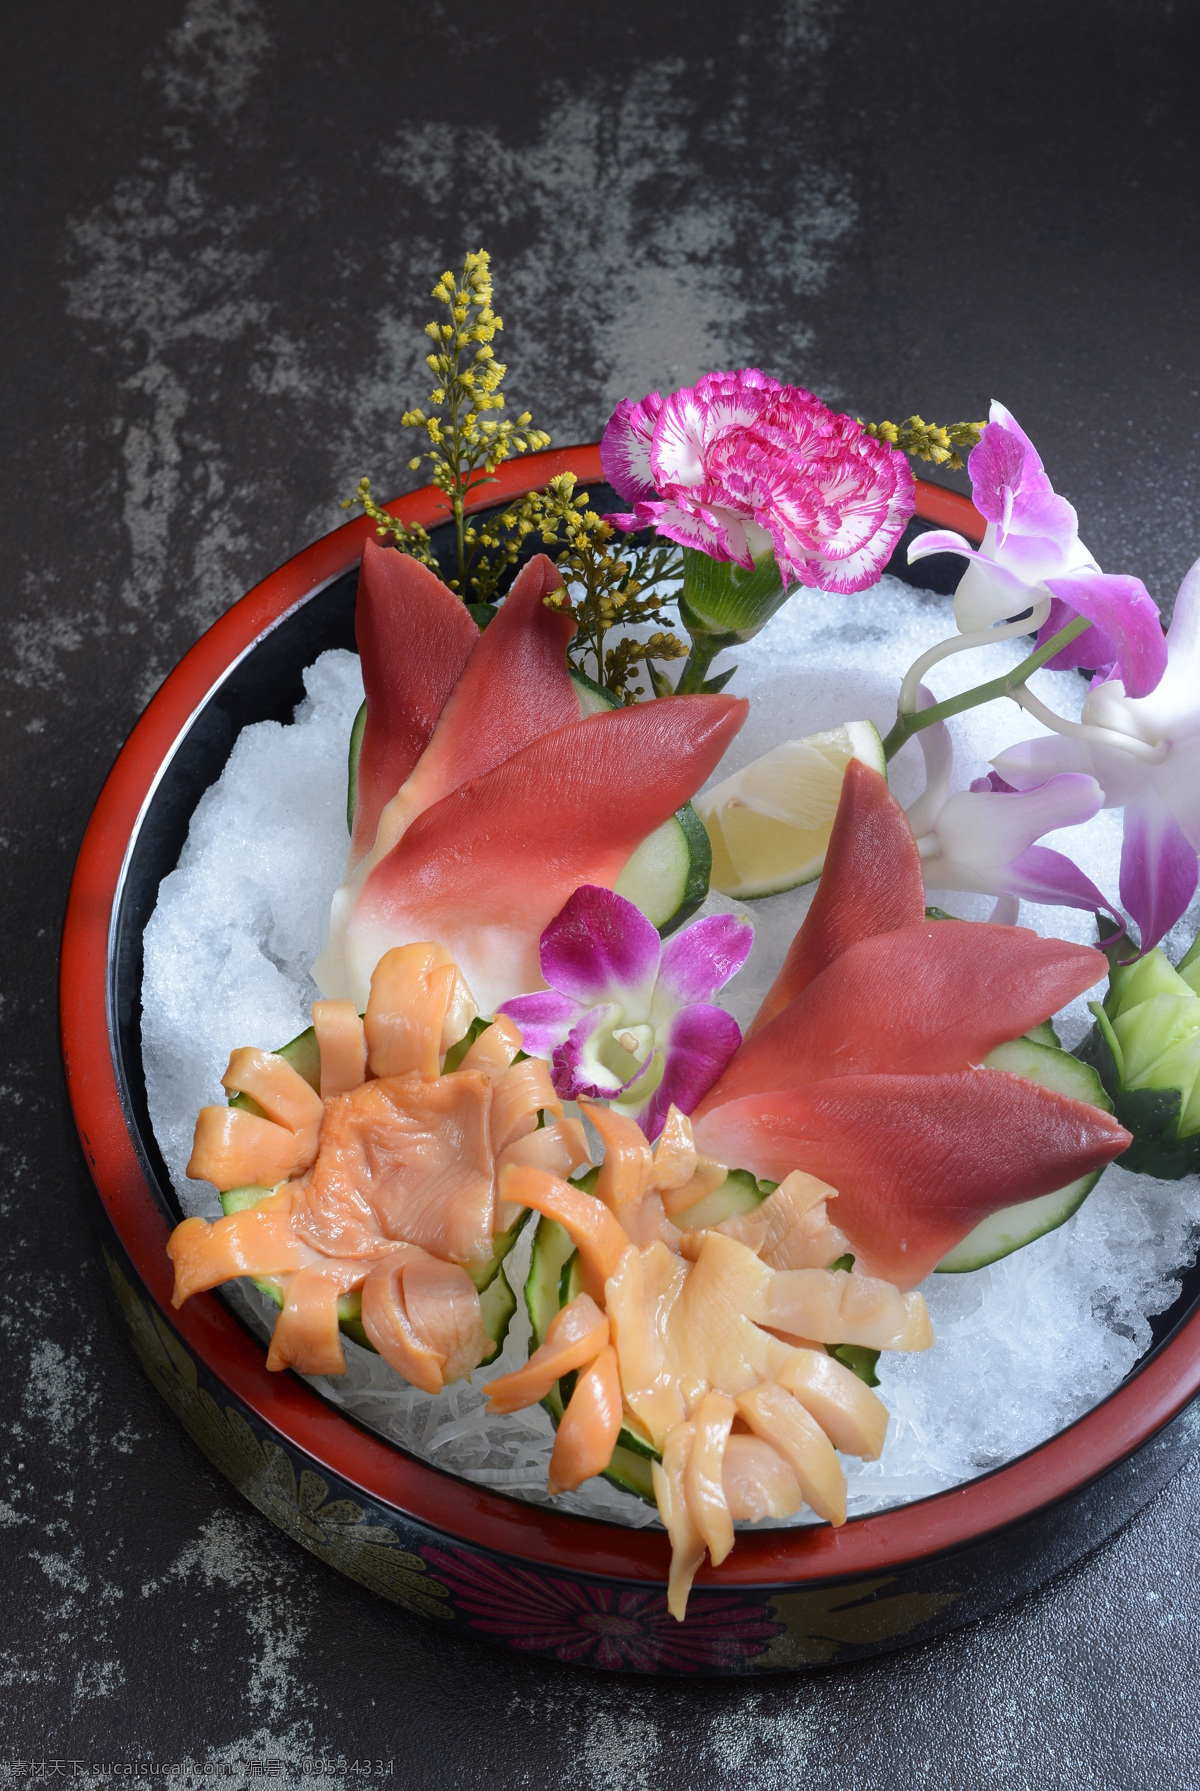 双色拼盘 刺身 赤贝 北极贝 日本料理 日式美食 餐饮美食